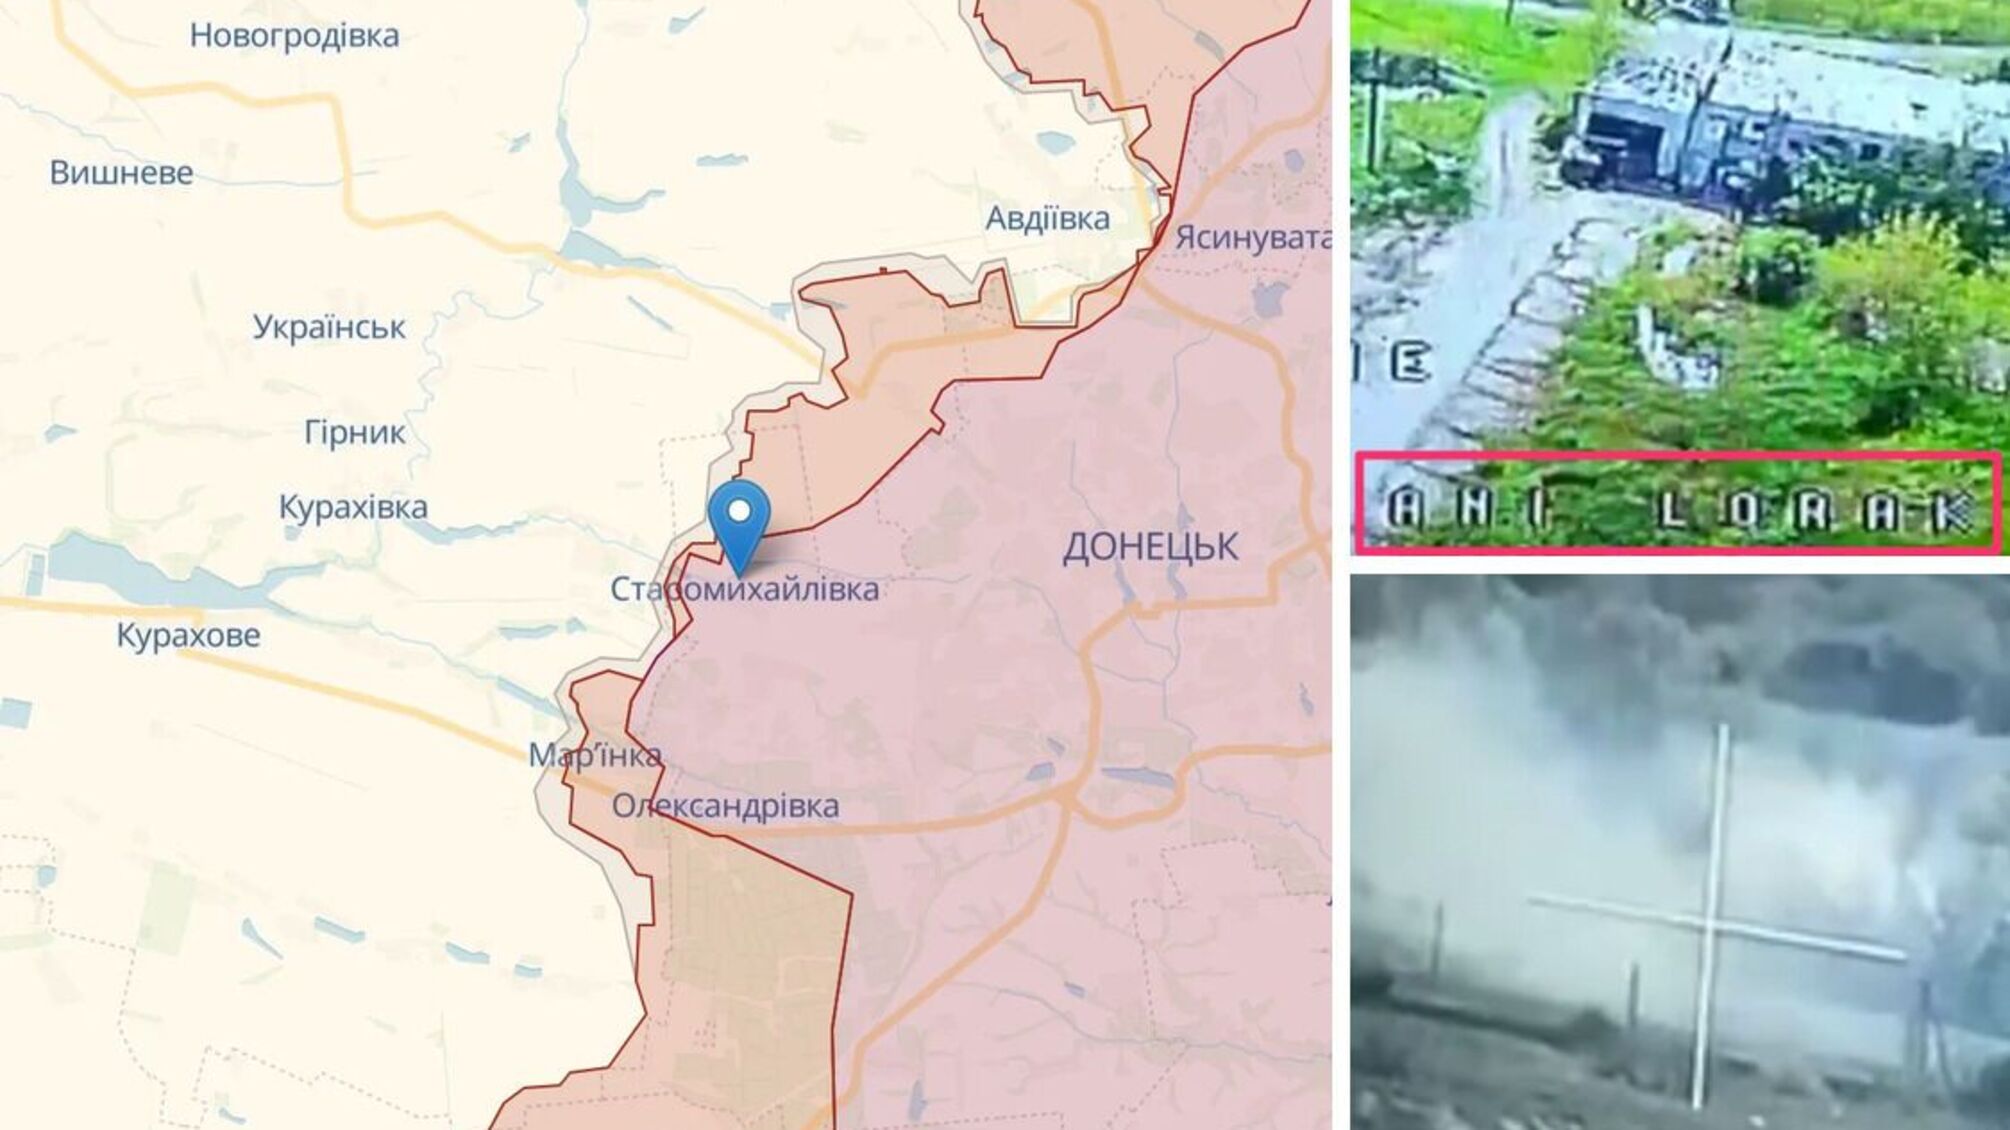 Вибух у передмісті Донецька: російський склад боєприпасів знищила 'Ані Лорак' (відео)